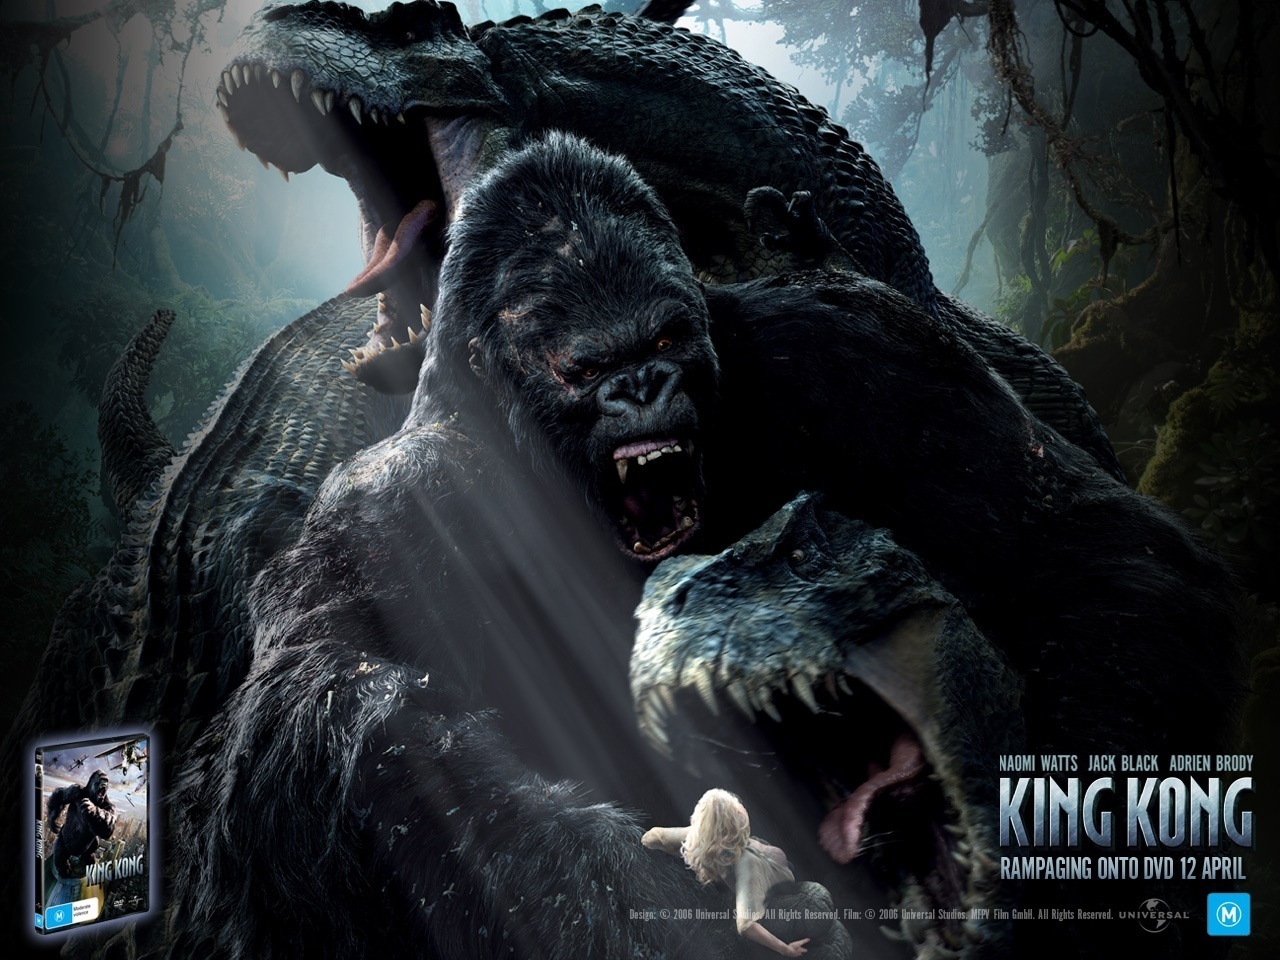 King Kong Image HD Wallpaper And